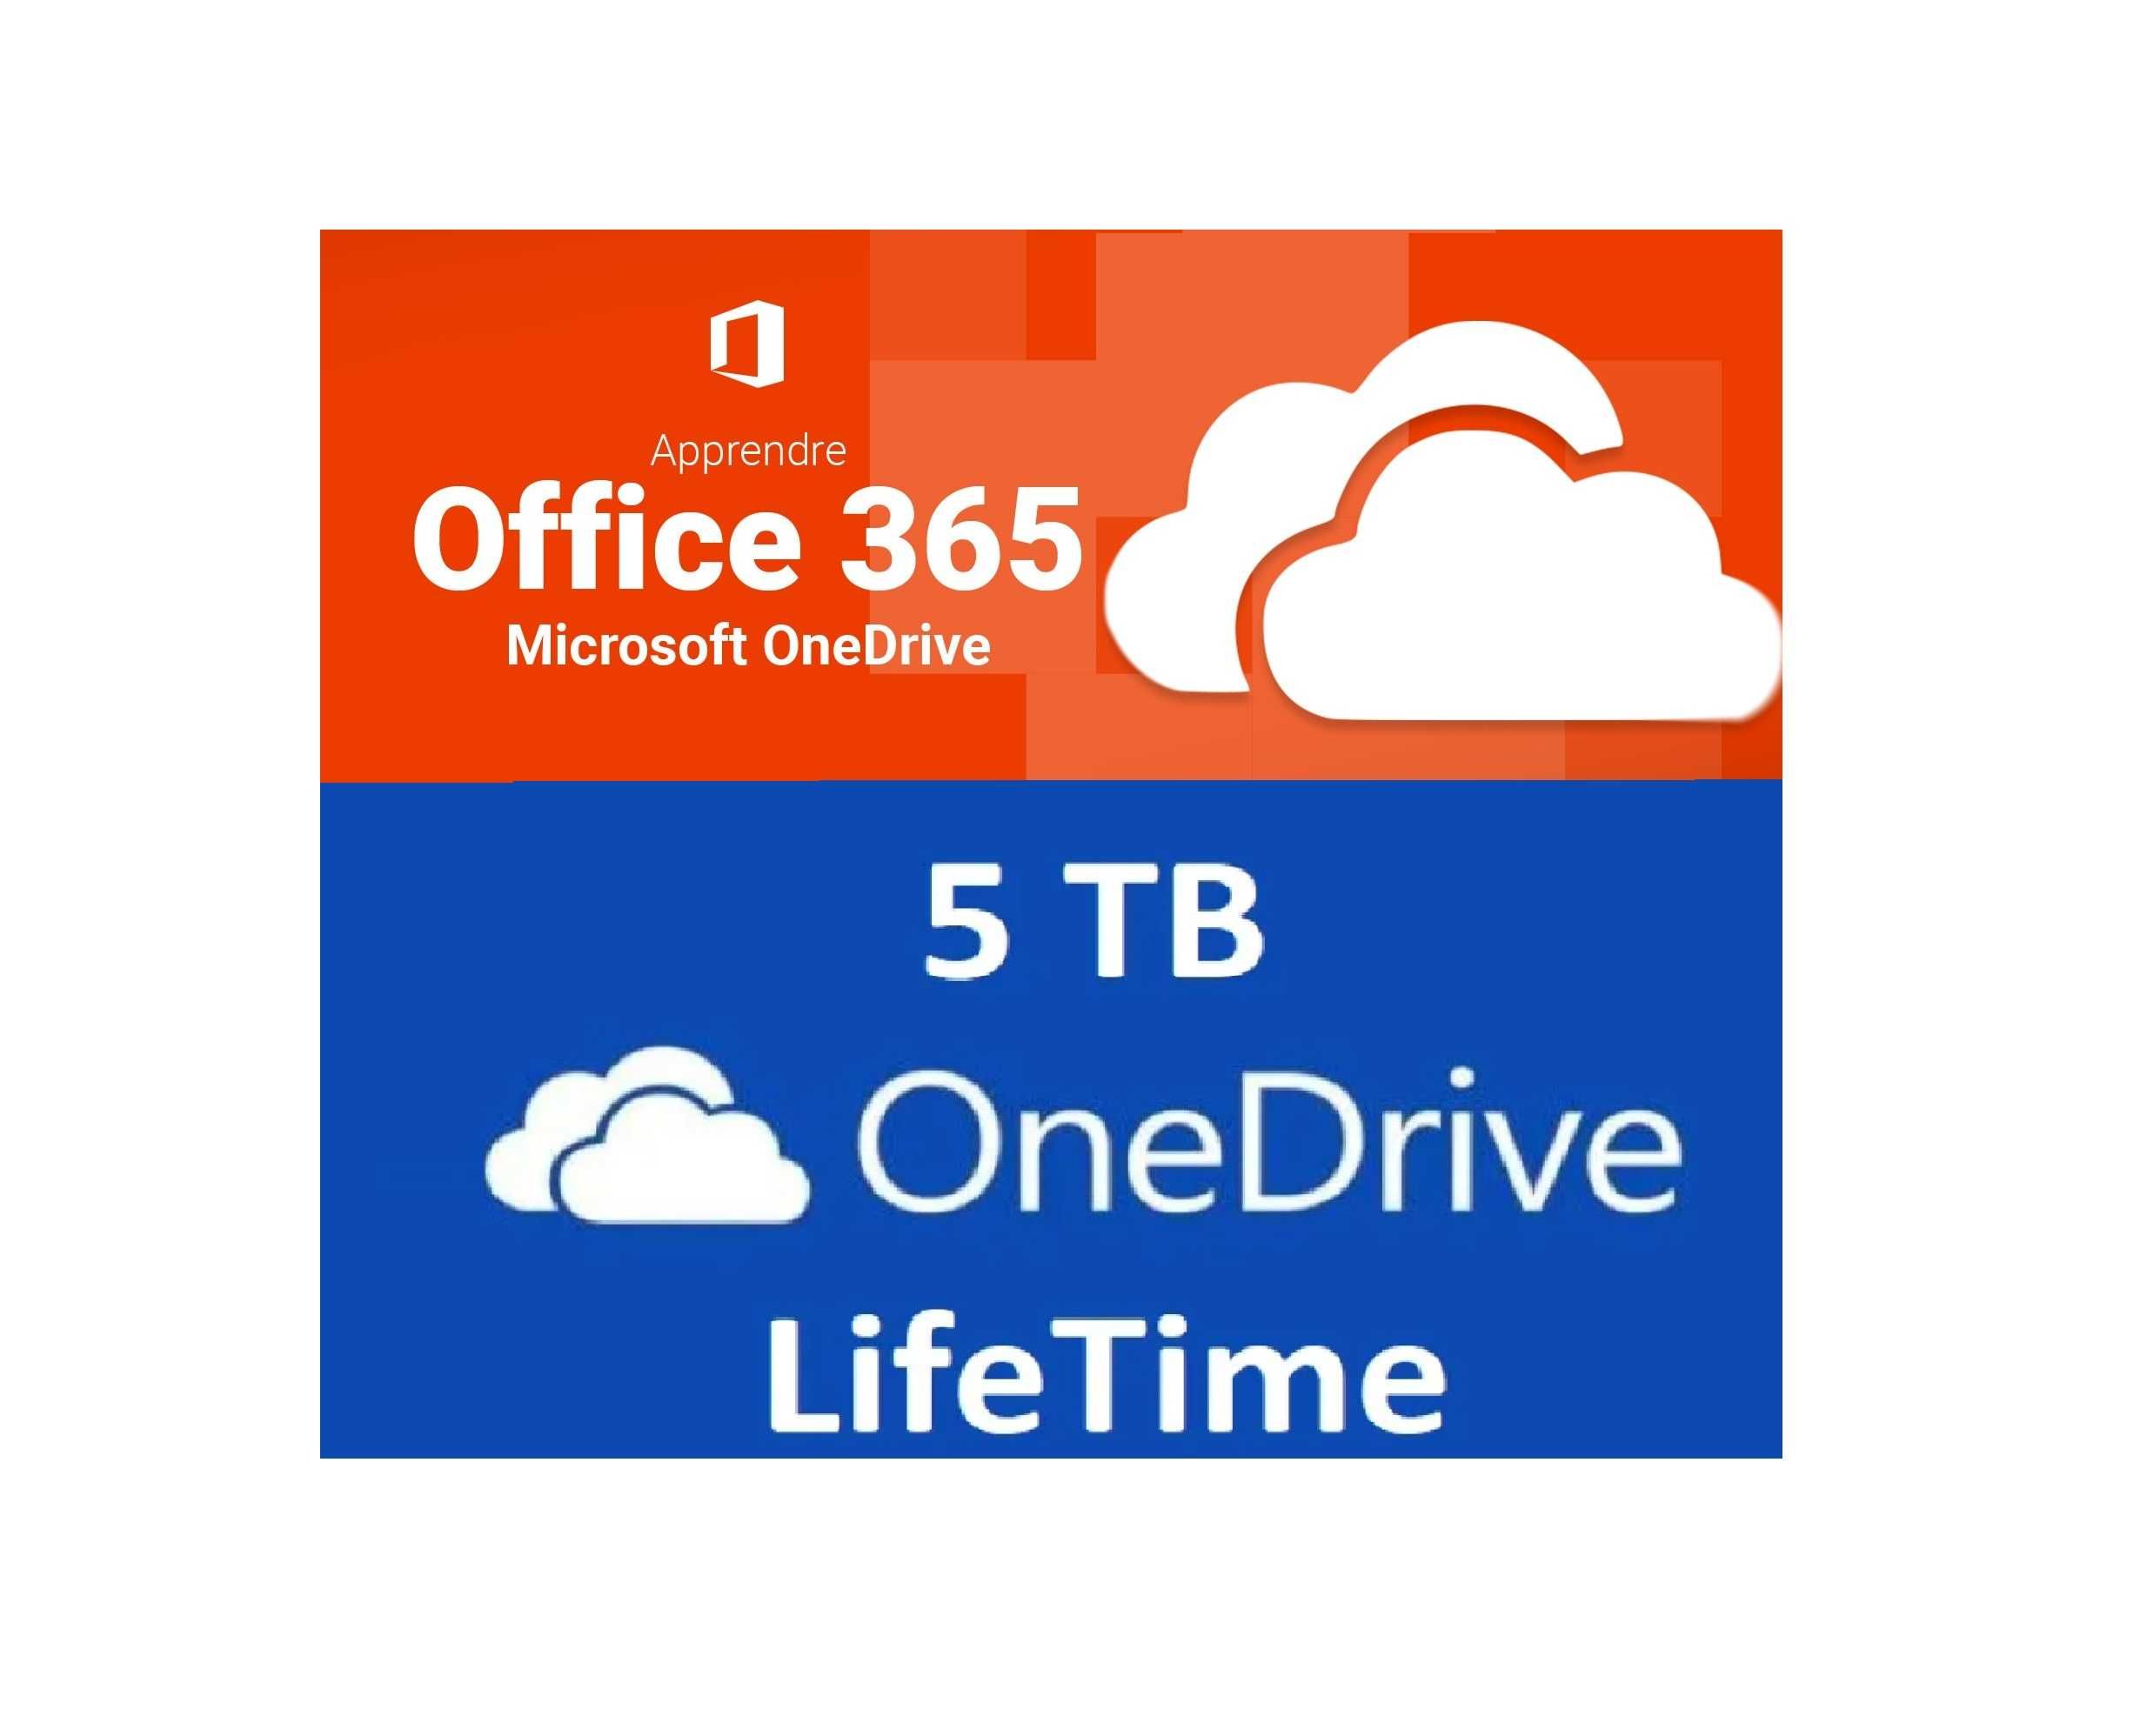 Лицензия Microsoft Office 365 +5TB OneDrive! лицензия (отвечаю быстро)